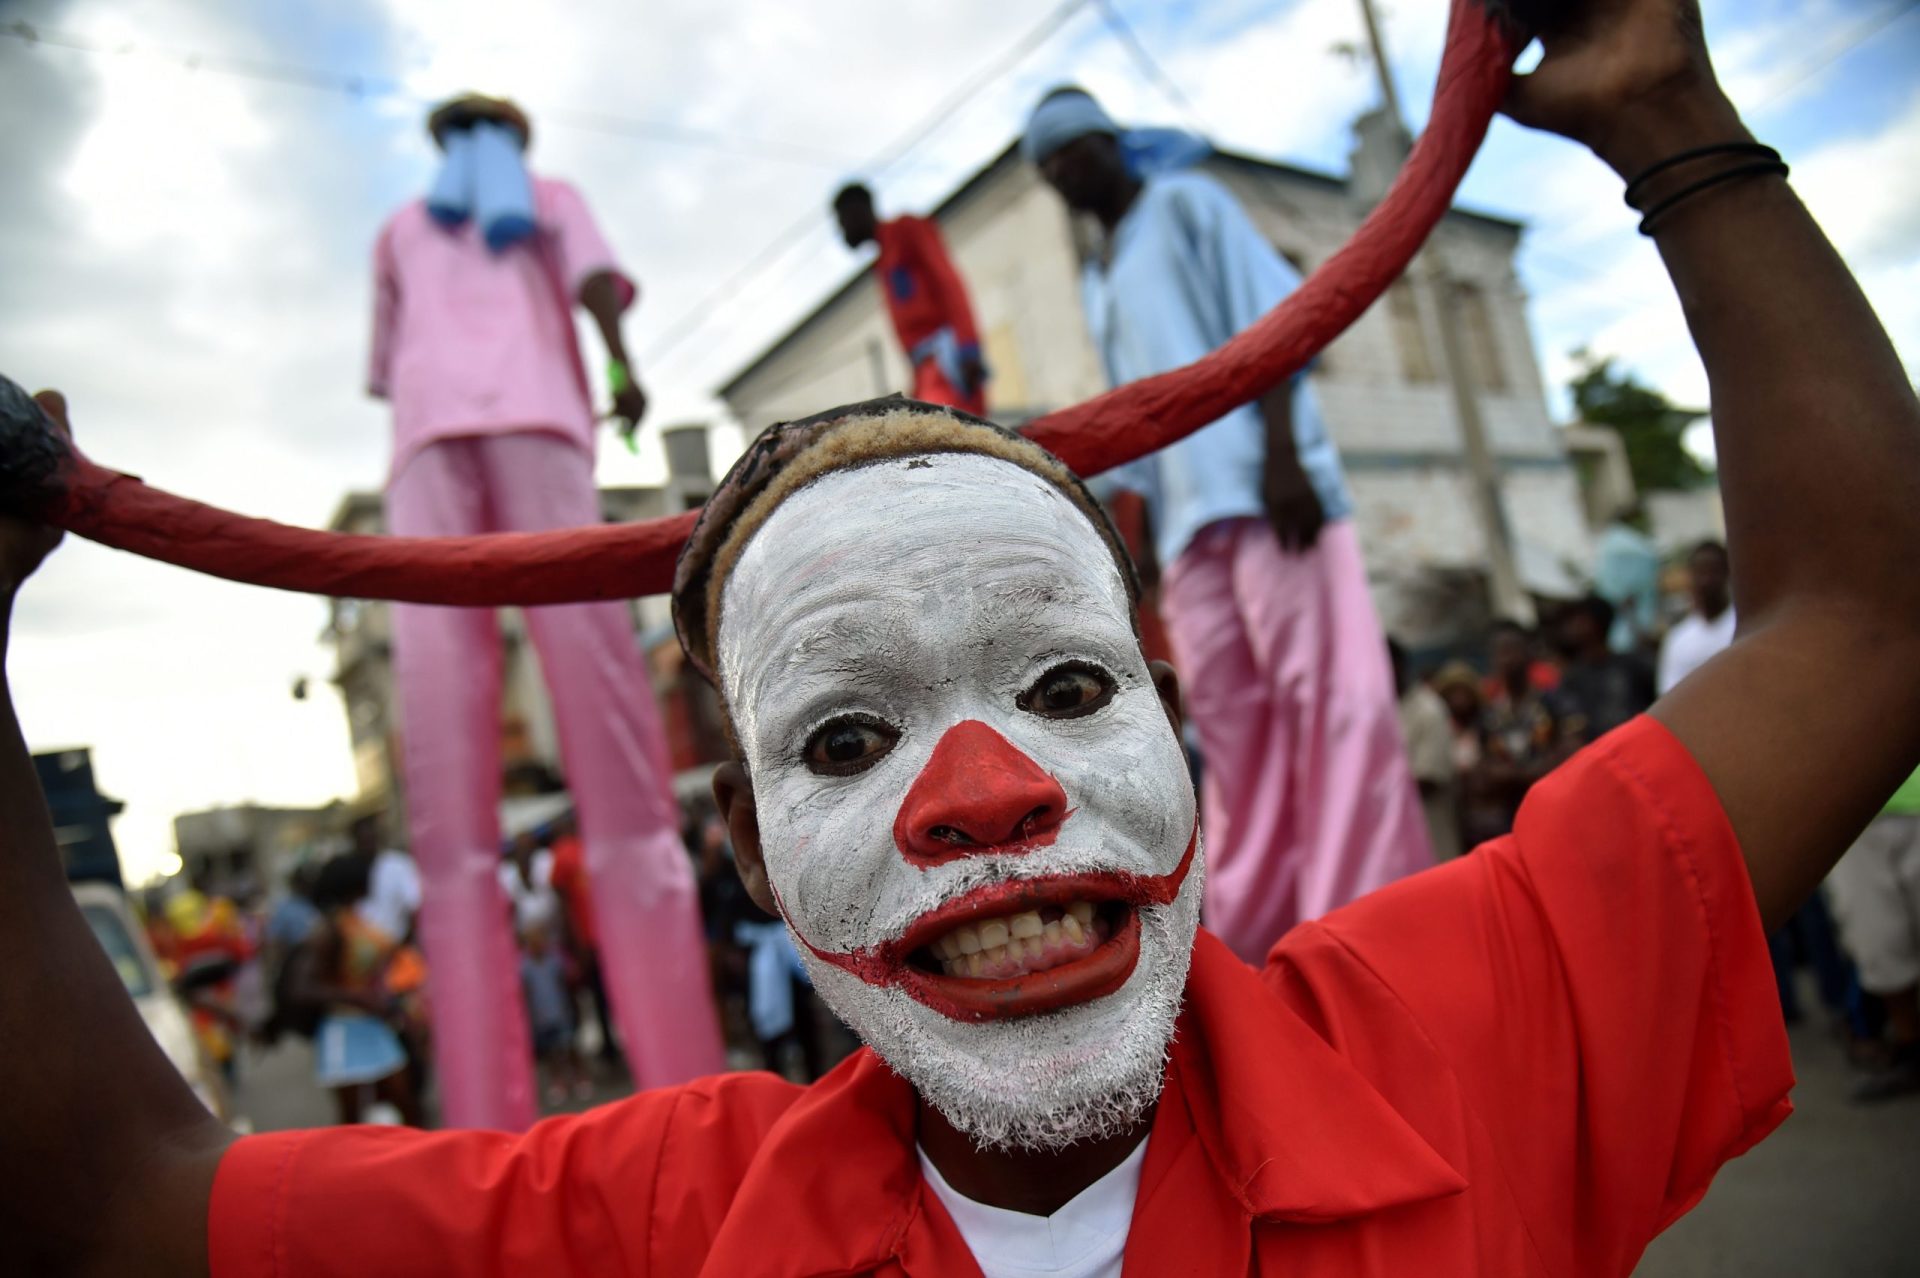 O Carnaval pelo mundo | FOTOGALERIA